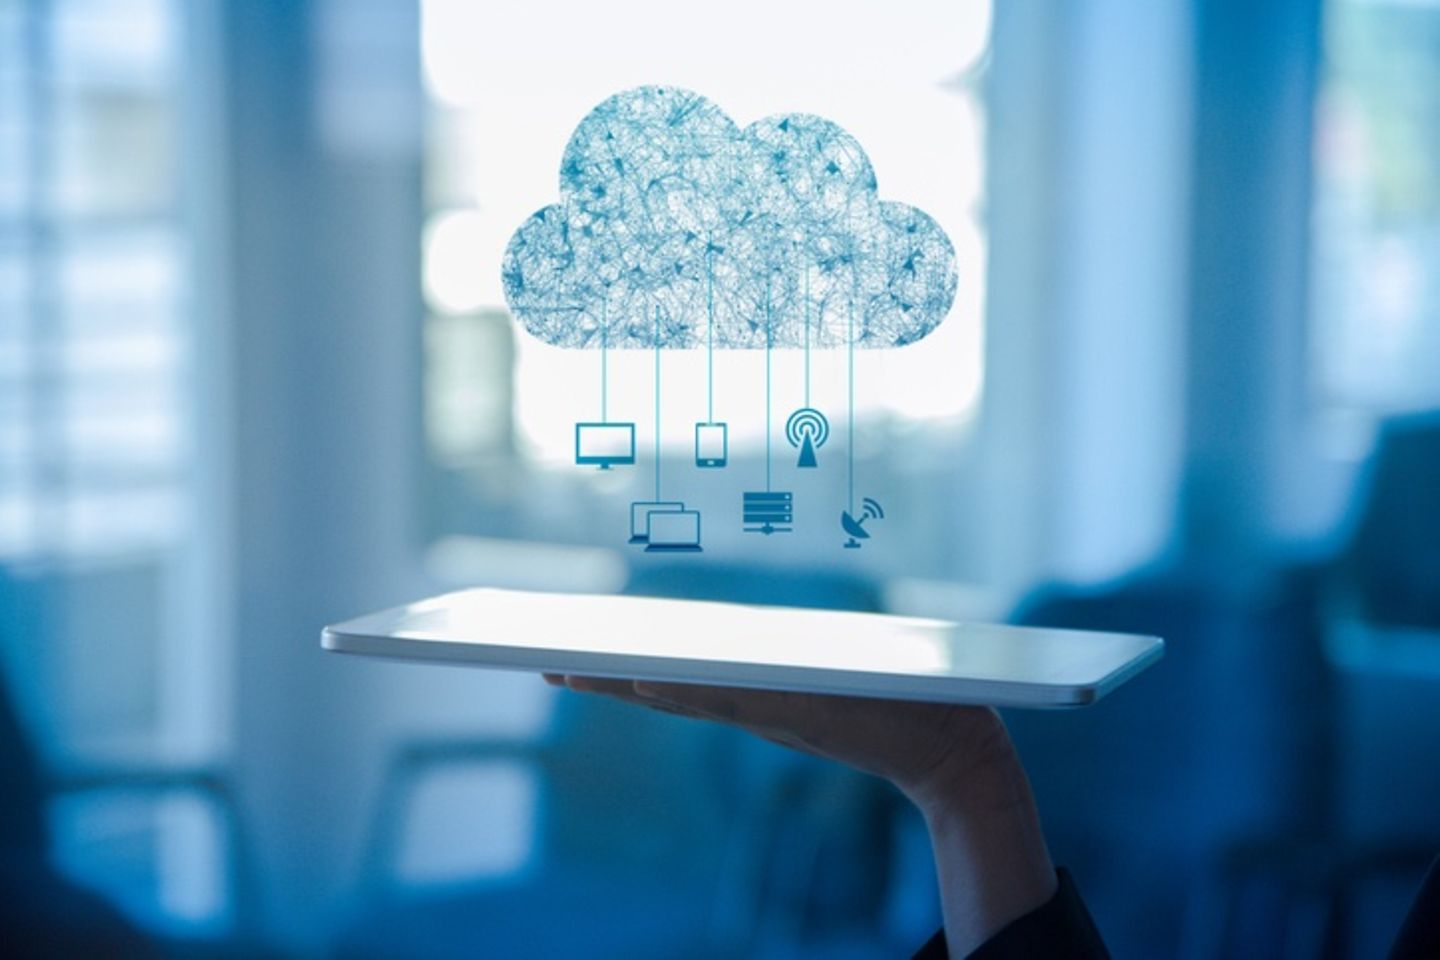 Mano sosteniendo un tablet sobre el cual hay un dibujo de una nube con íconos